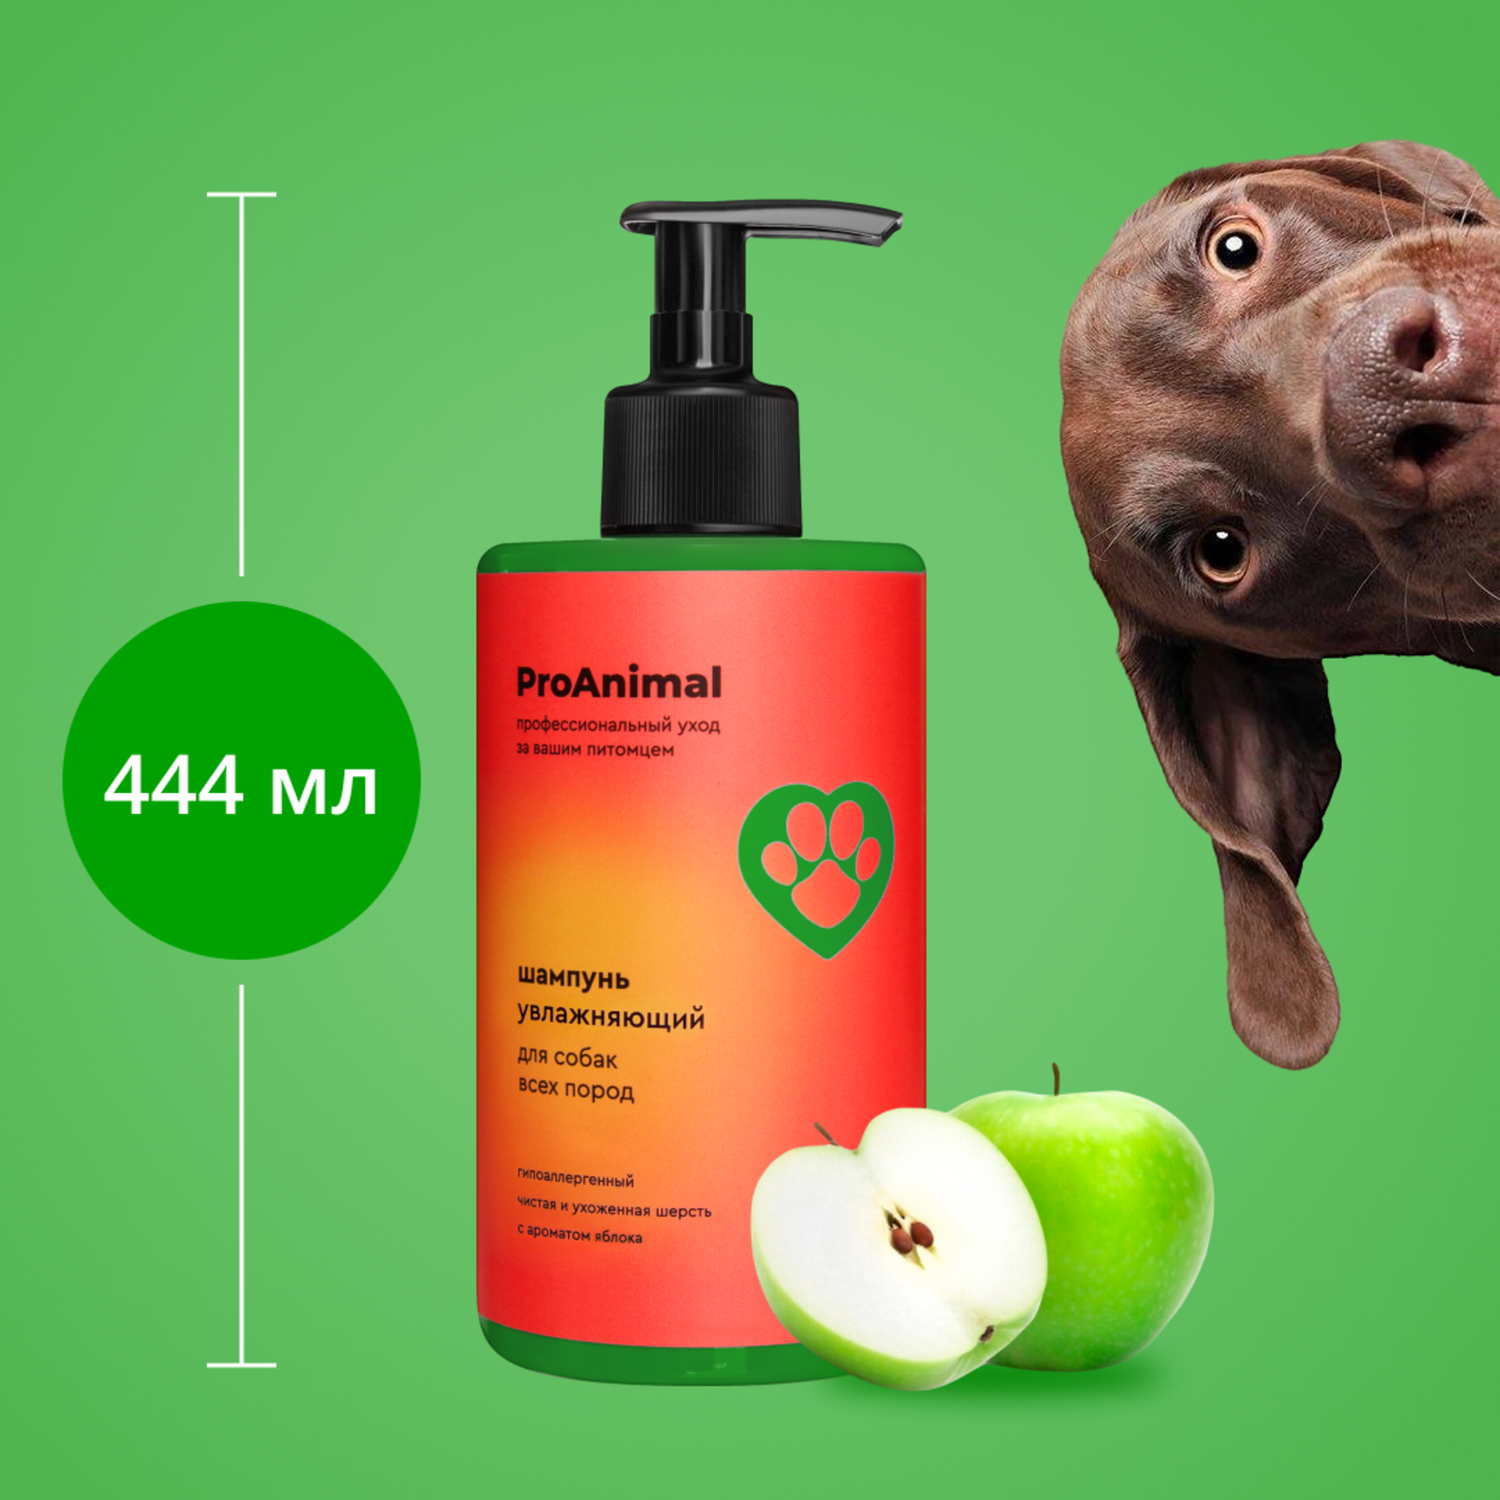 Шампунь с ароматом яблока ProAnimal универсальный домашний увлажняющий для собак - фото 2